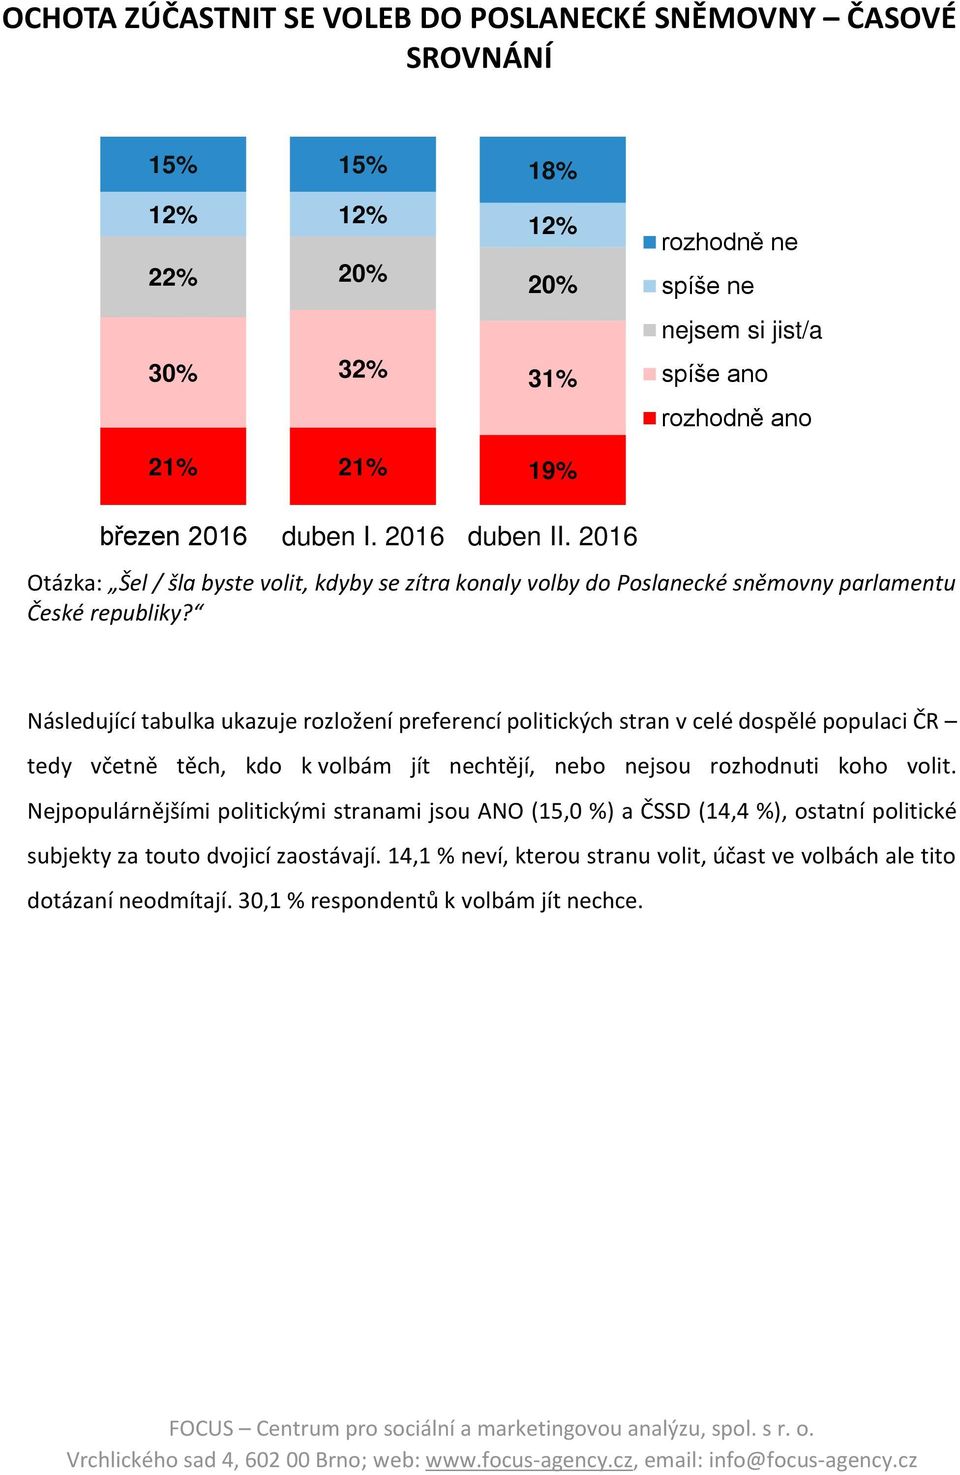 Následující tabulka ukazuje rozložení preferencí politických stran v celé dospělé populaci ČR tedy včetně těch, kdo k volbám jít nechtějí, nebo nejsou rozhodnuti koho volit.